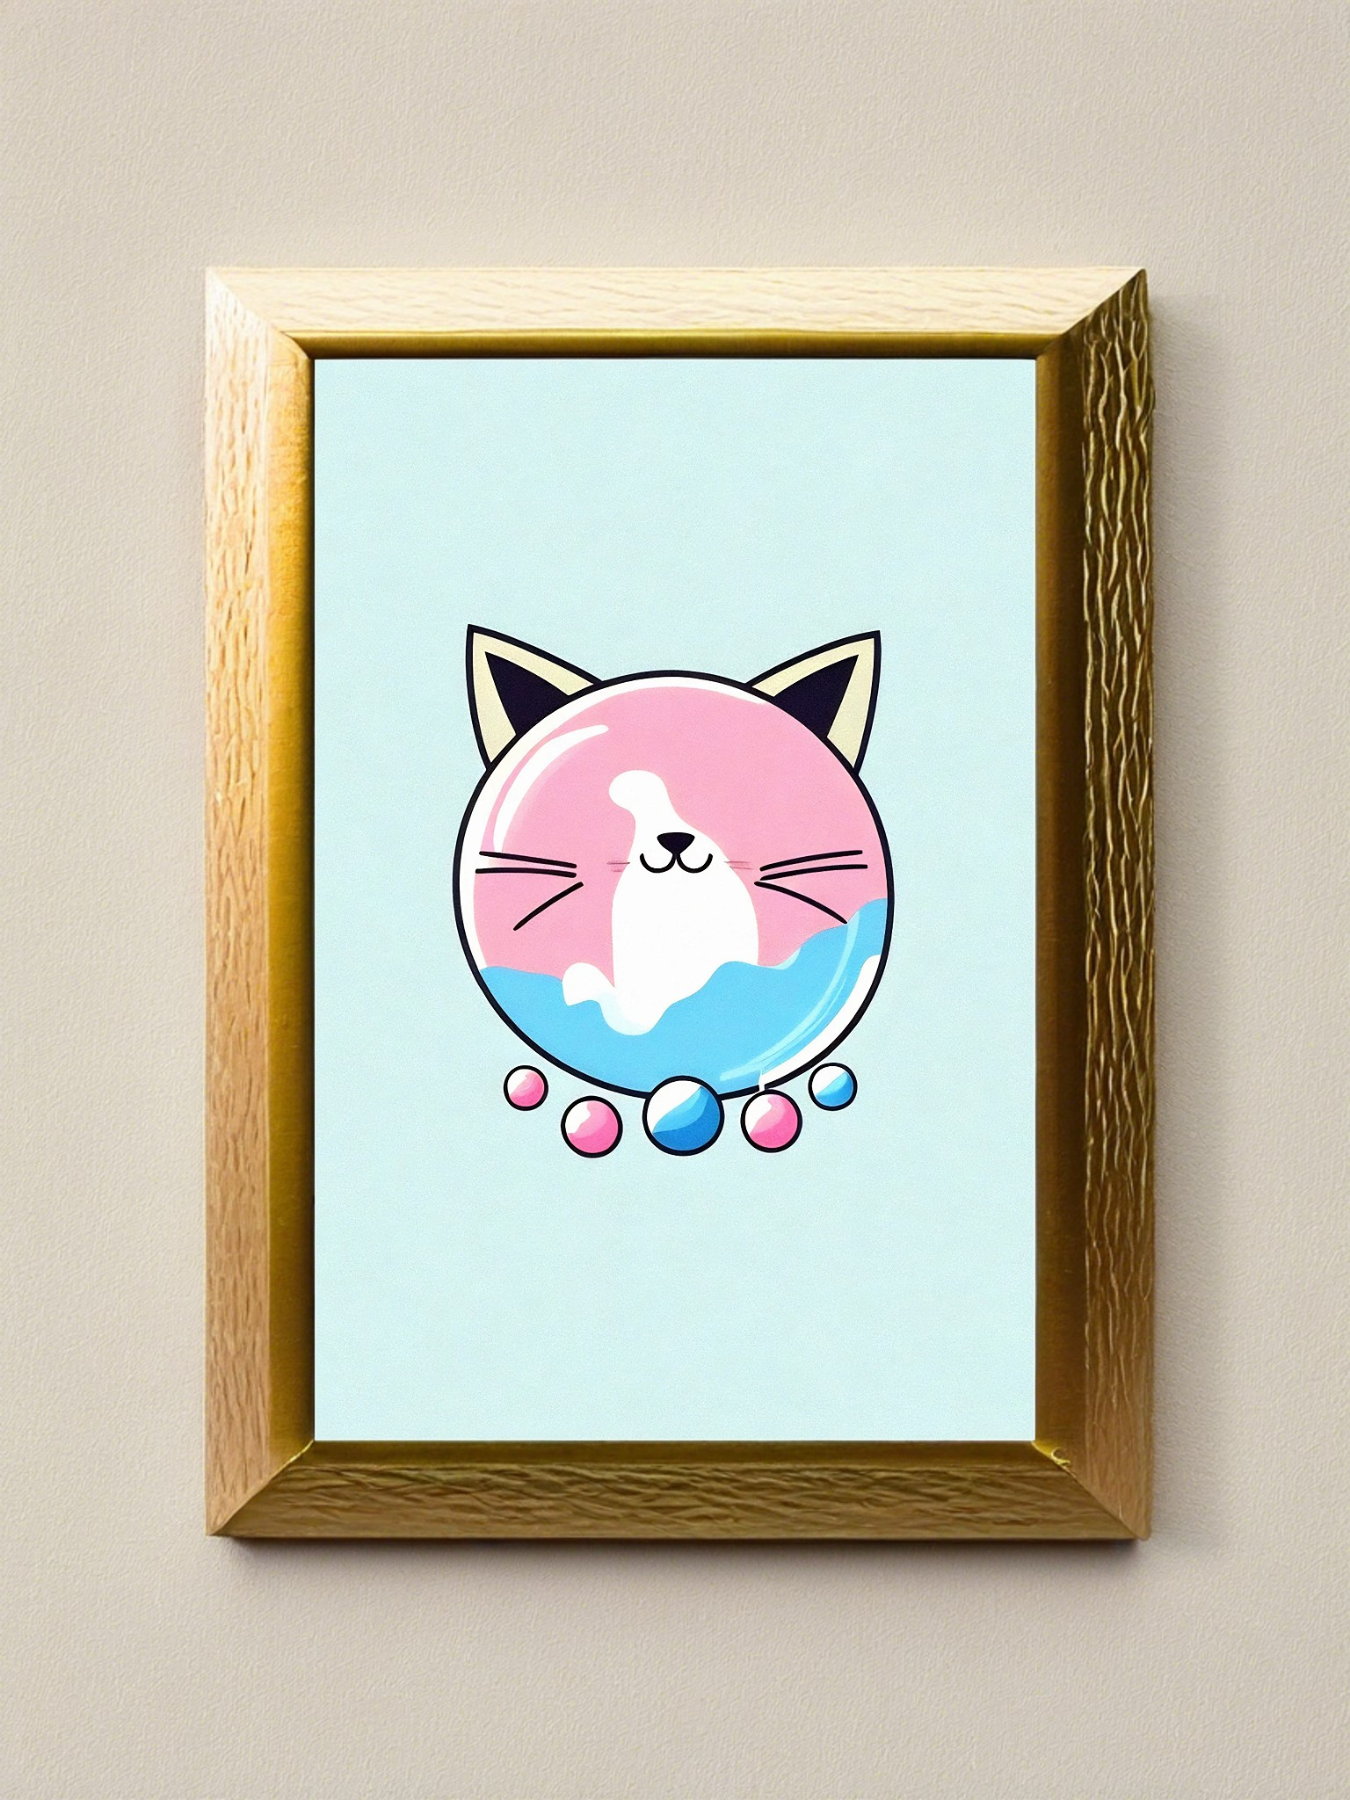 Kaugummi Katze 9 - Mini Poster - 20x30cm 4